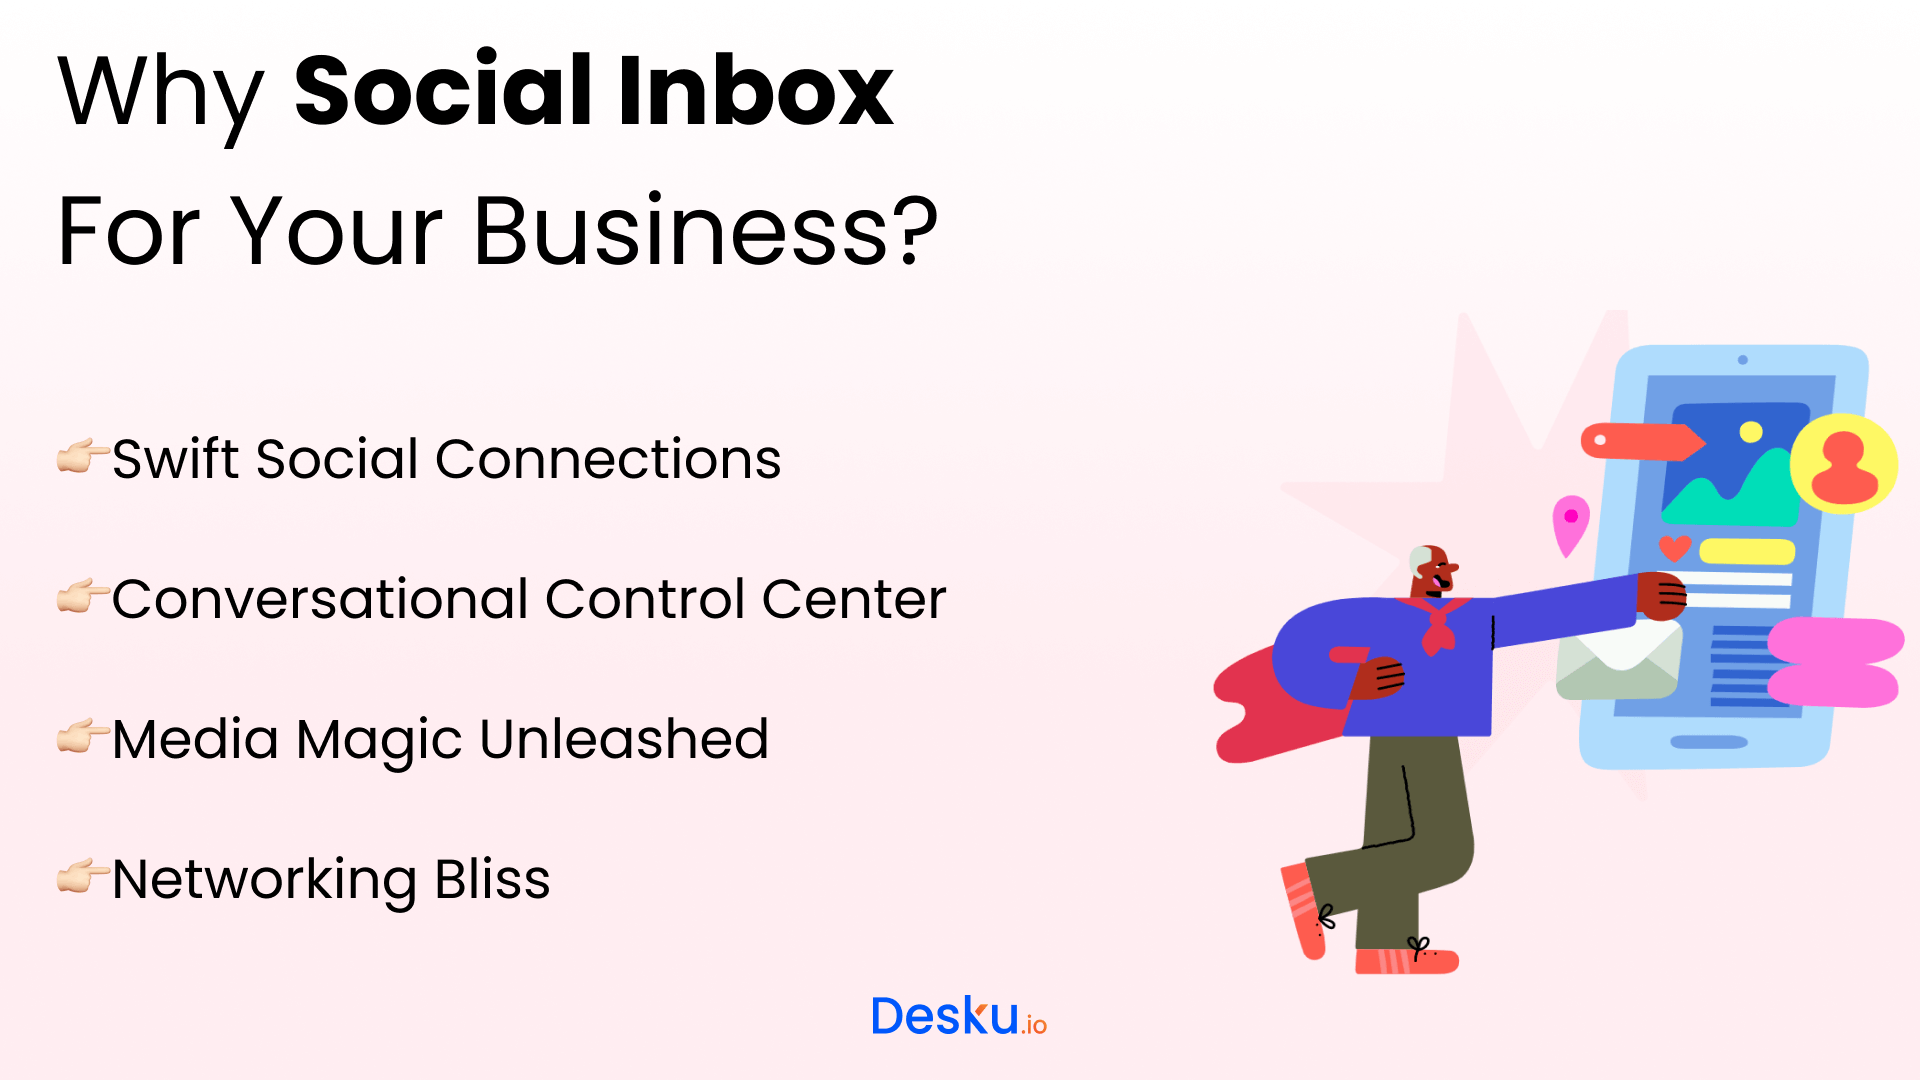 Social inbox